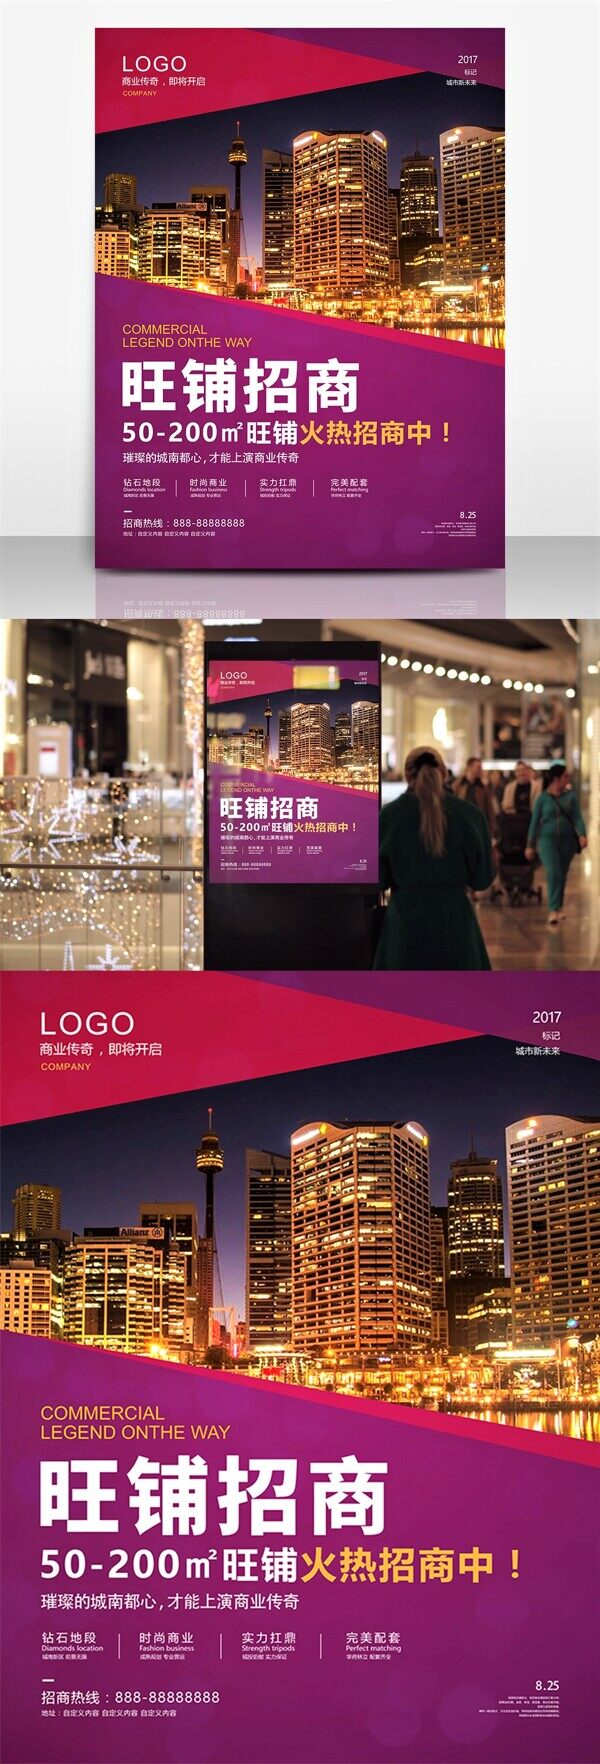 紫色时尚地产旺铺招商宣传海报